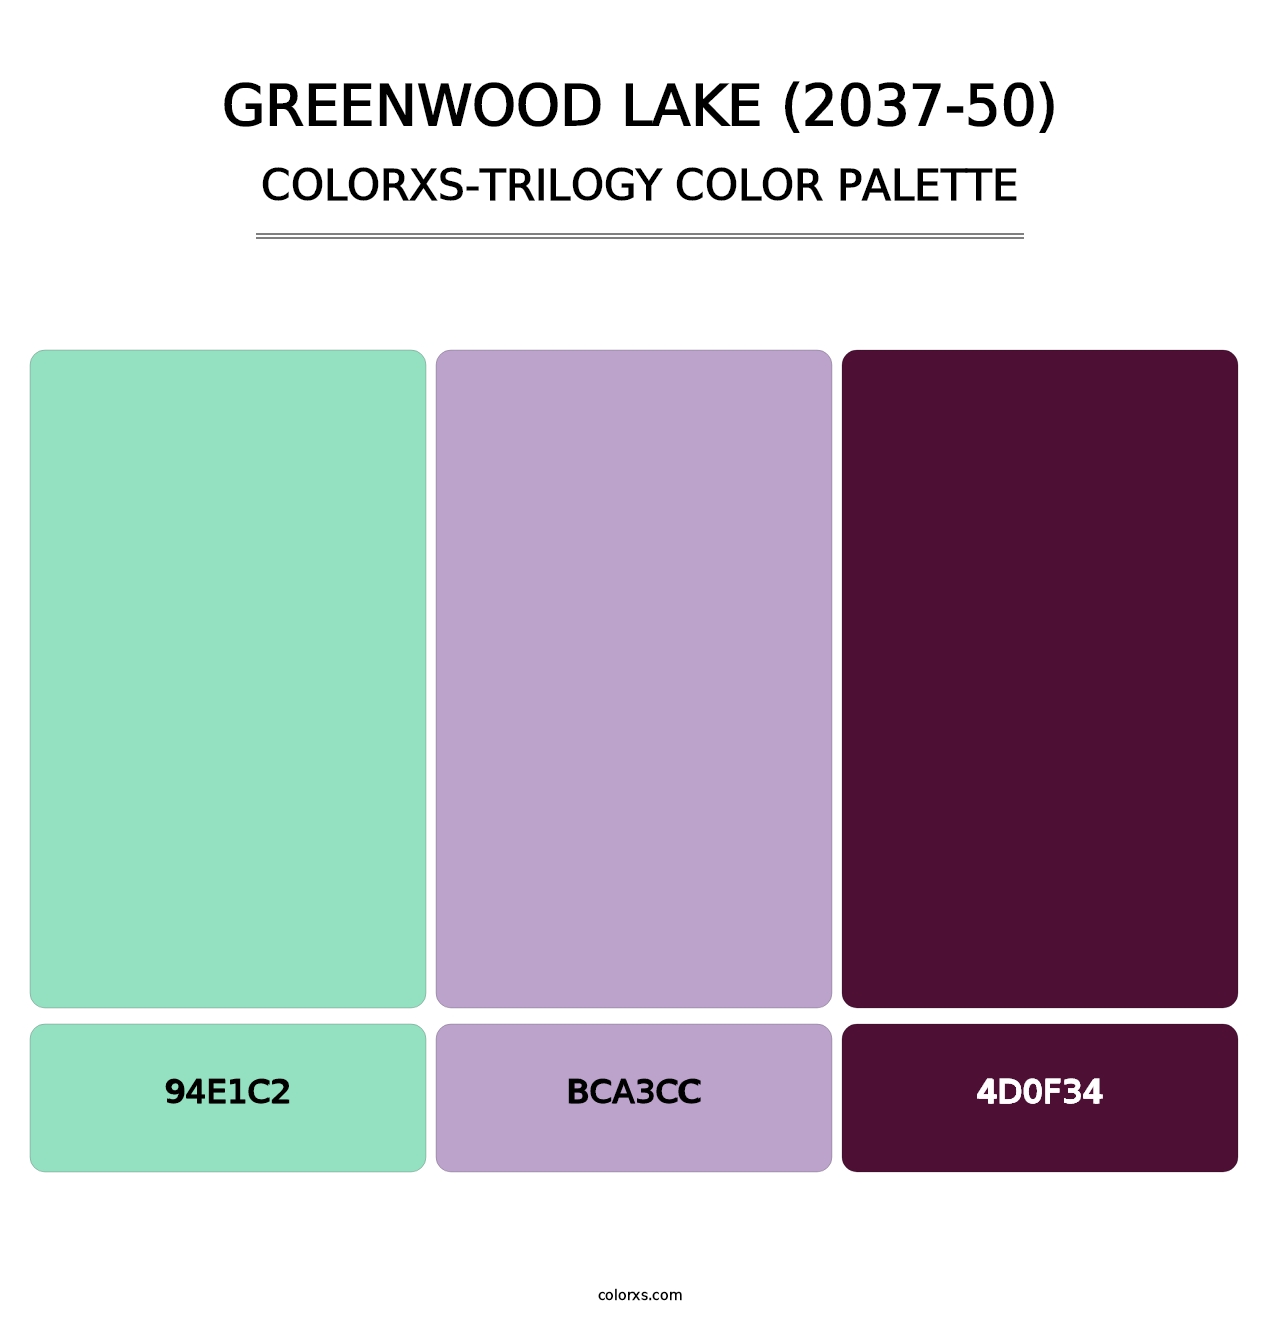 Greenwood Lake (2037-50) - Colorxs Trilogy Palette